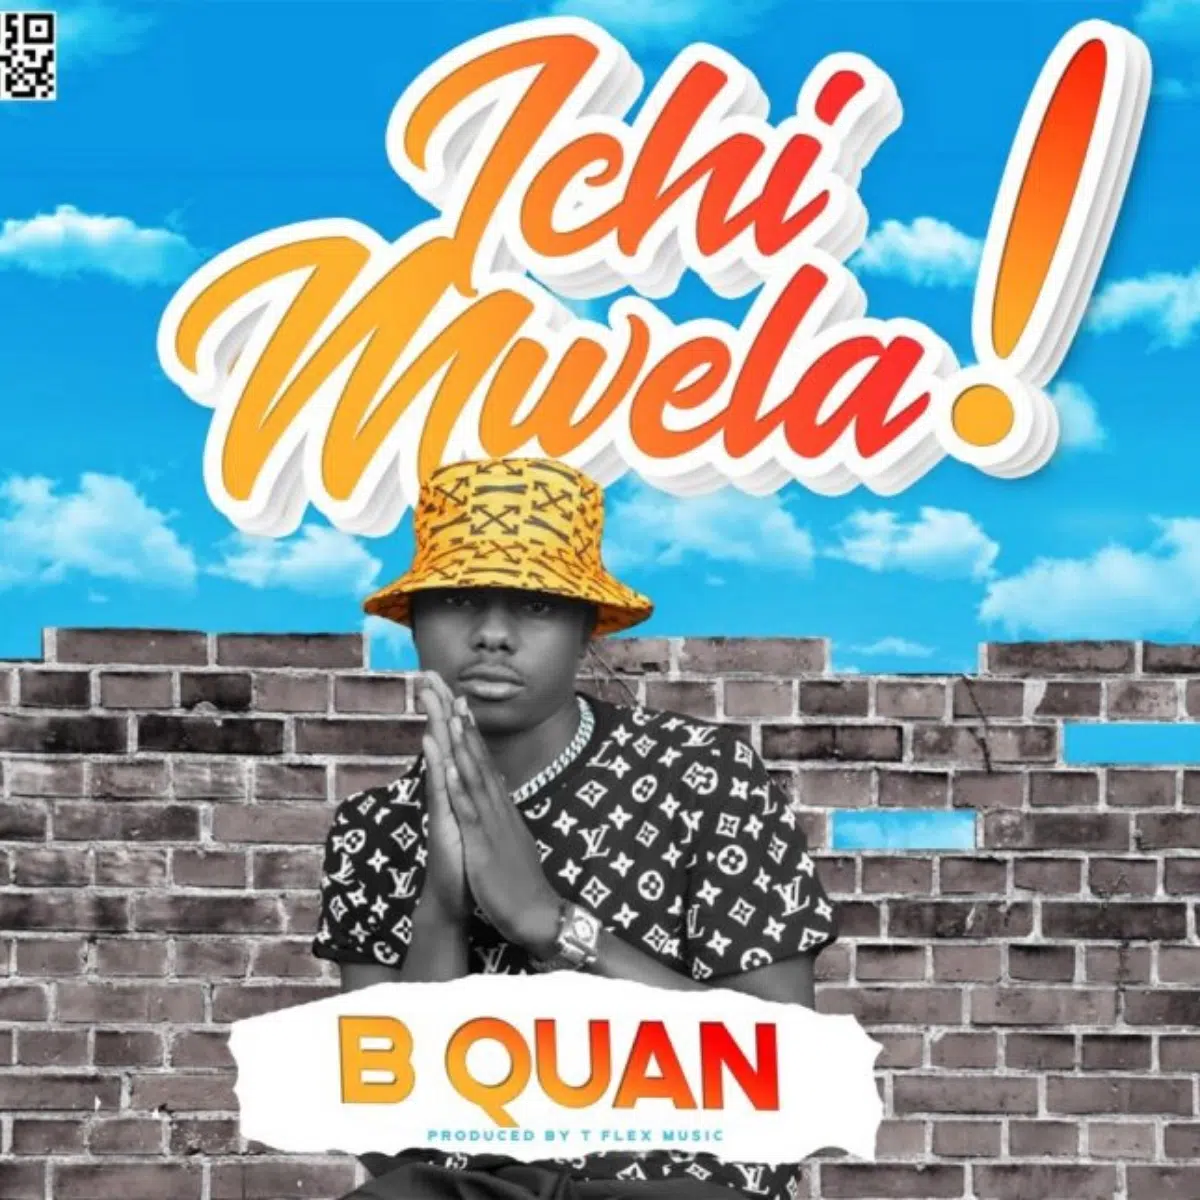 DOWNLOAD: B Quan – “Ichi Mwela!” Mp3